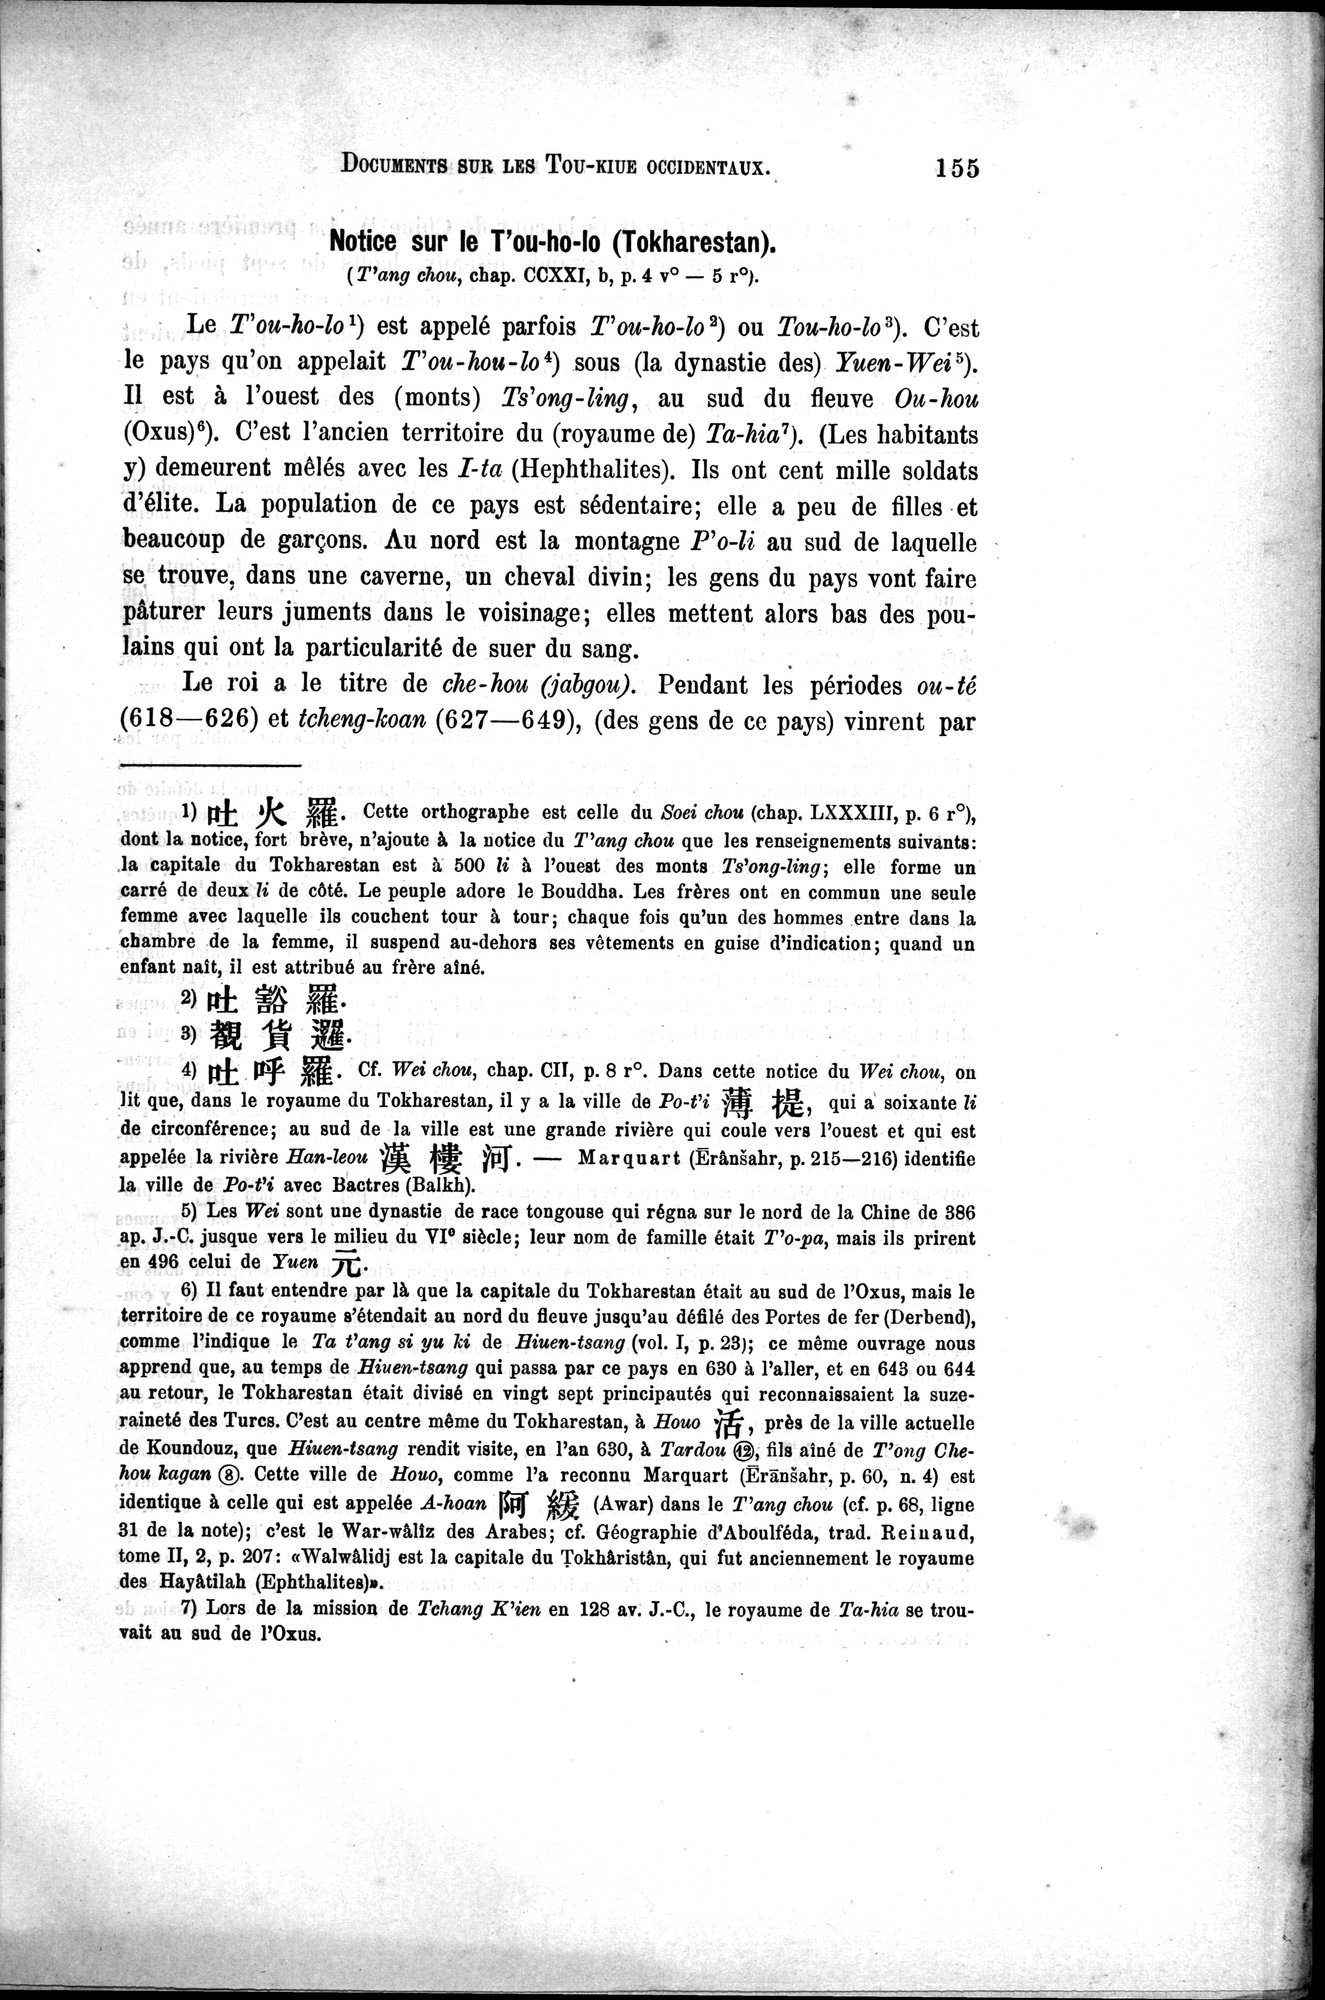 Documents sur les Tou-kiue (Turcs) occidentaux : vol.1 / Page 165 (Grayscale High Resolution Image)